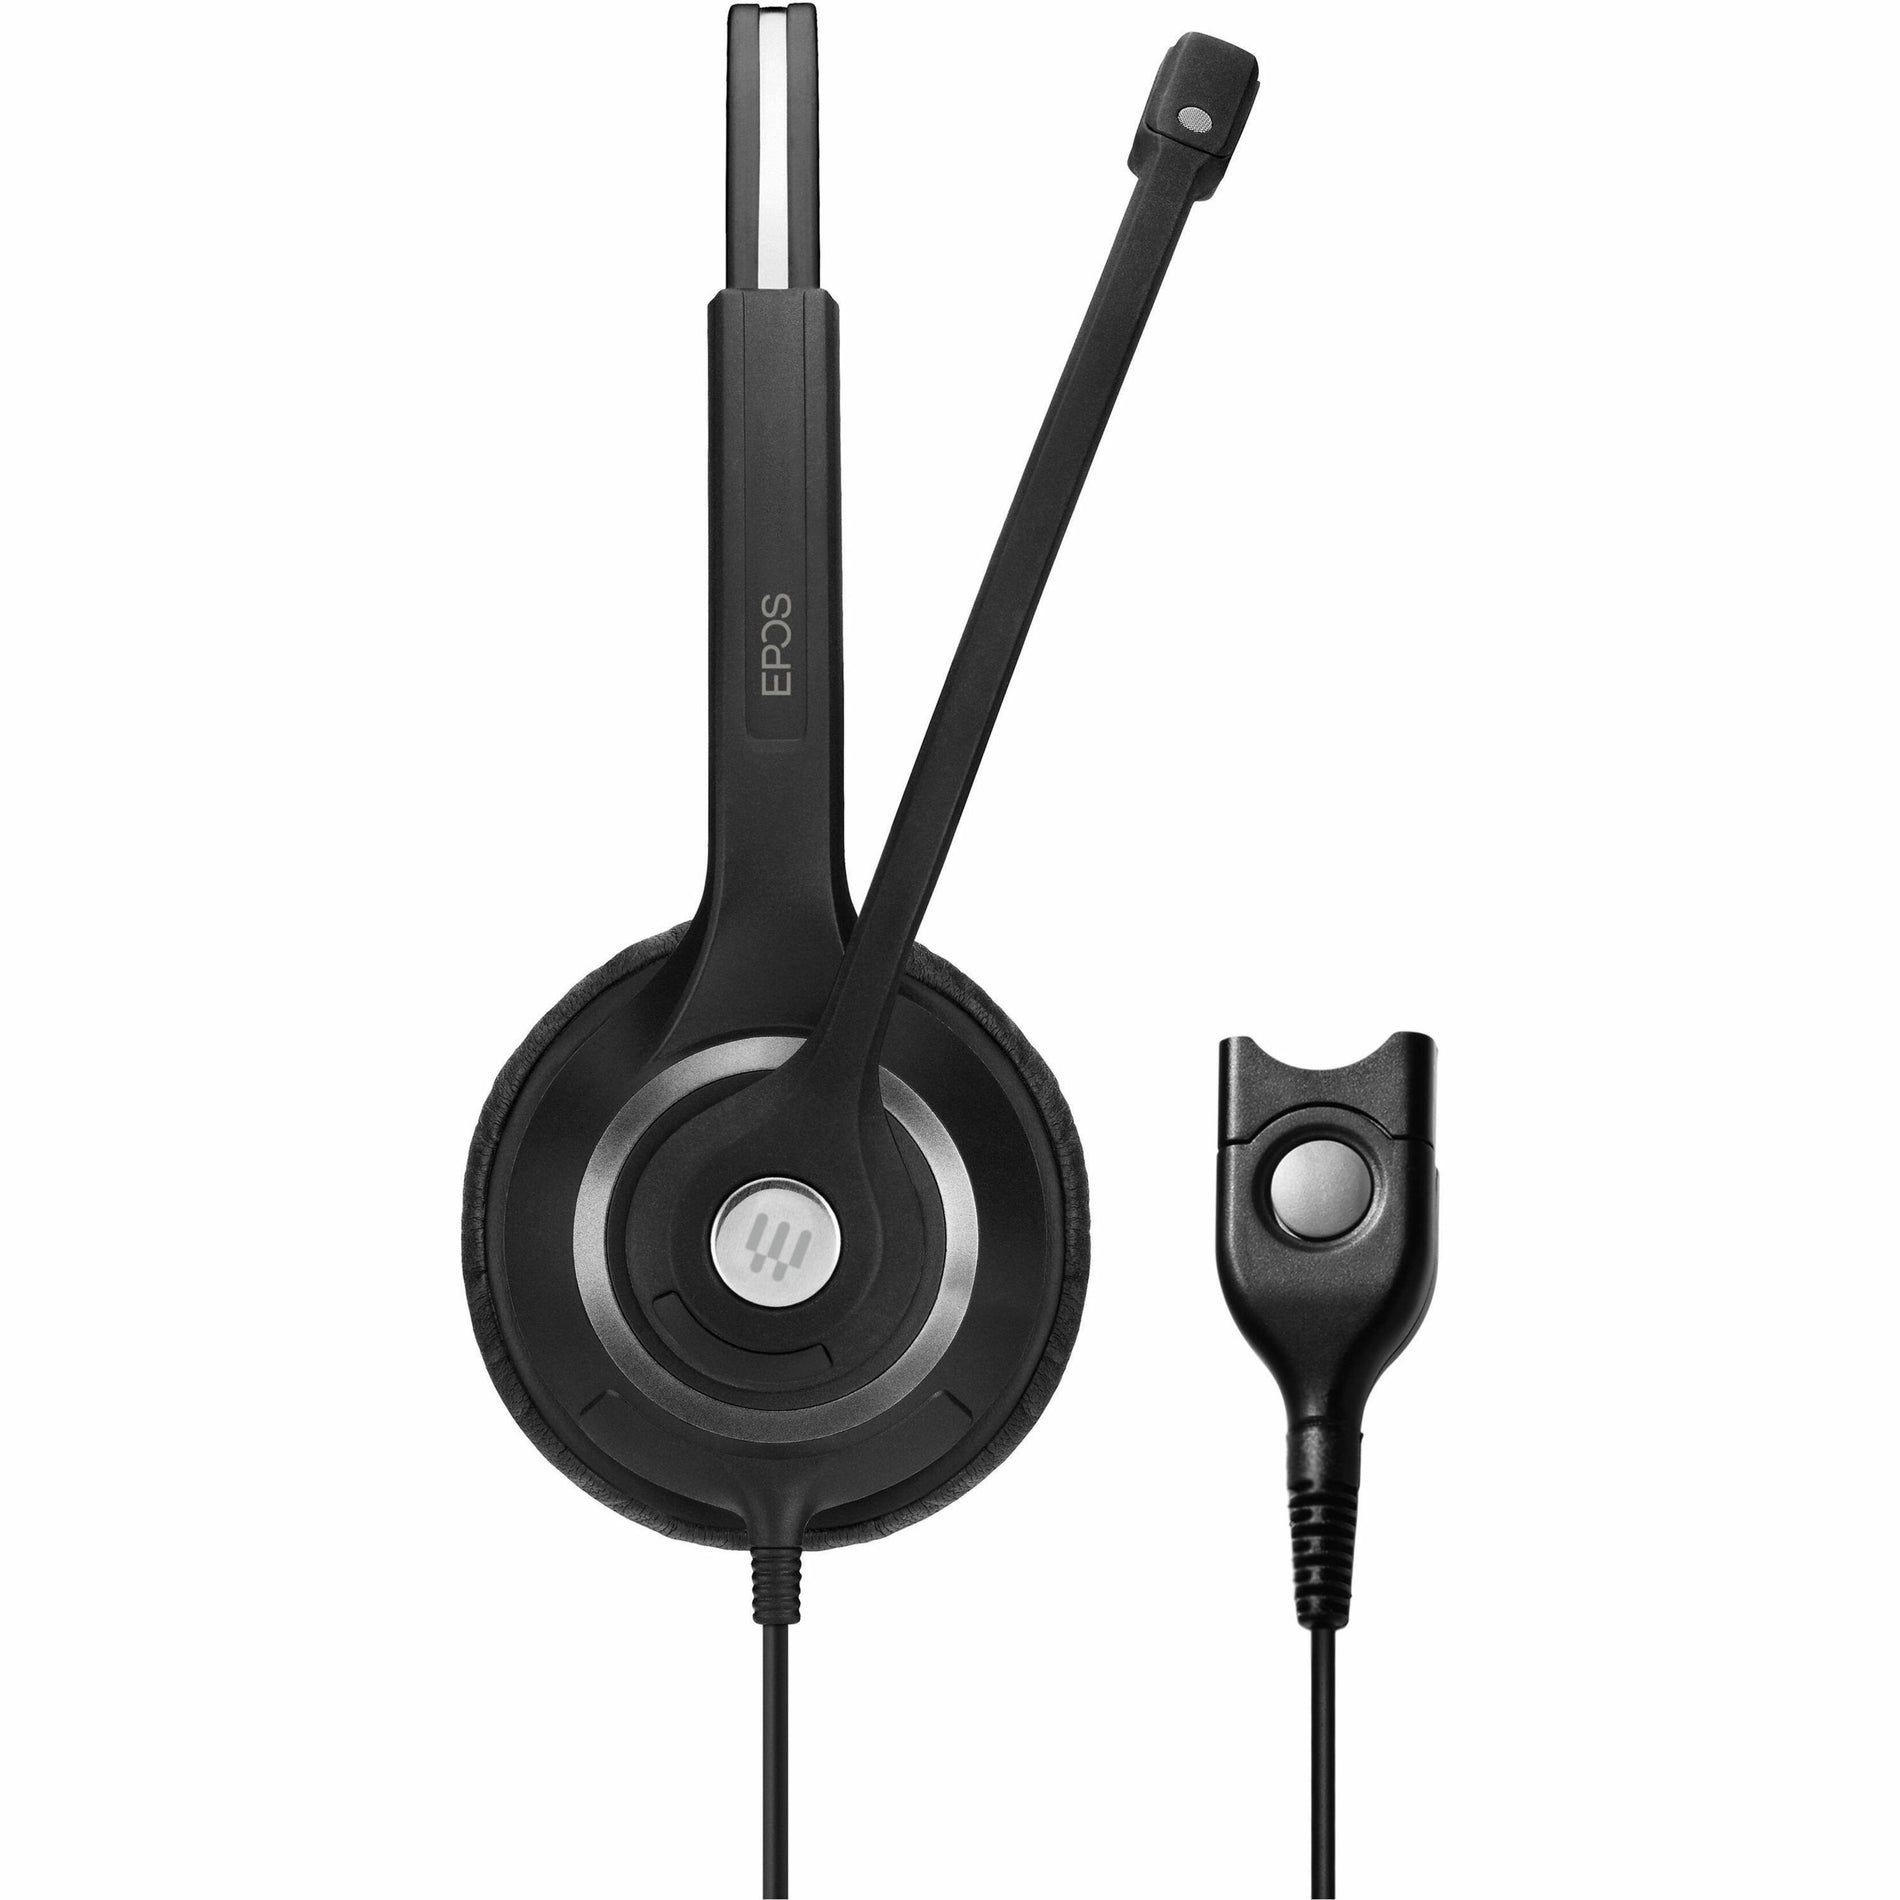 EPOS | SENNHEISER IMPACT SC 260 On-ear Binaural Headset [Discontinued]